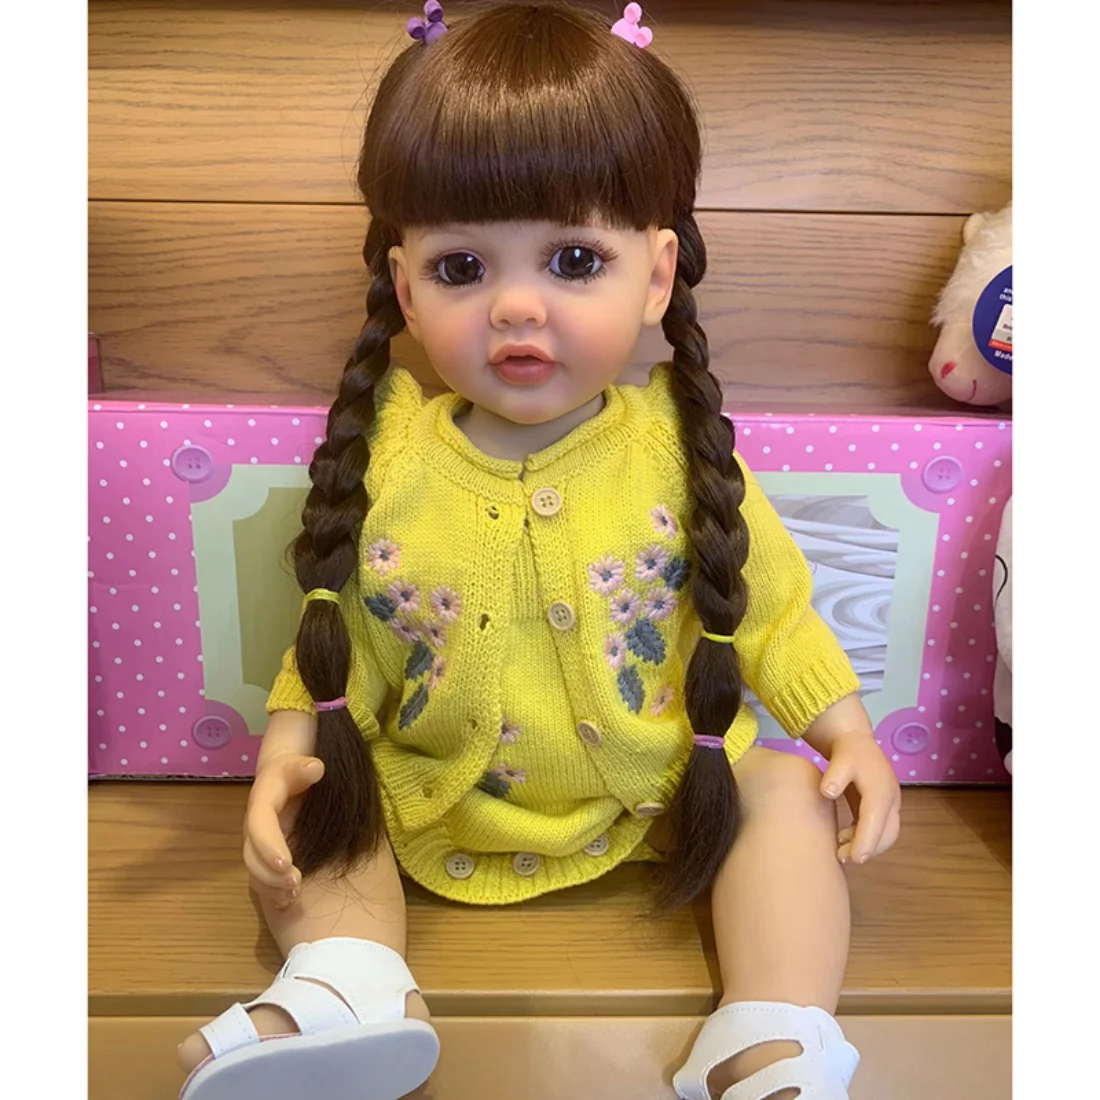 55 СМ Вече е Завършен Рисувани Възстановената Миличка Момиче Кукла Бети Принцеса Момиче Кукла Ръчно Рисувани Кукла Подаръци Играчки за Деца